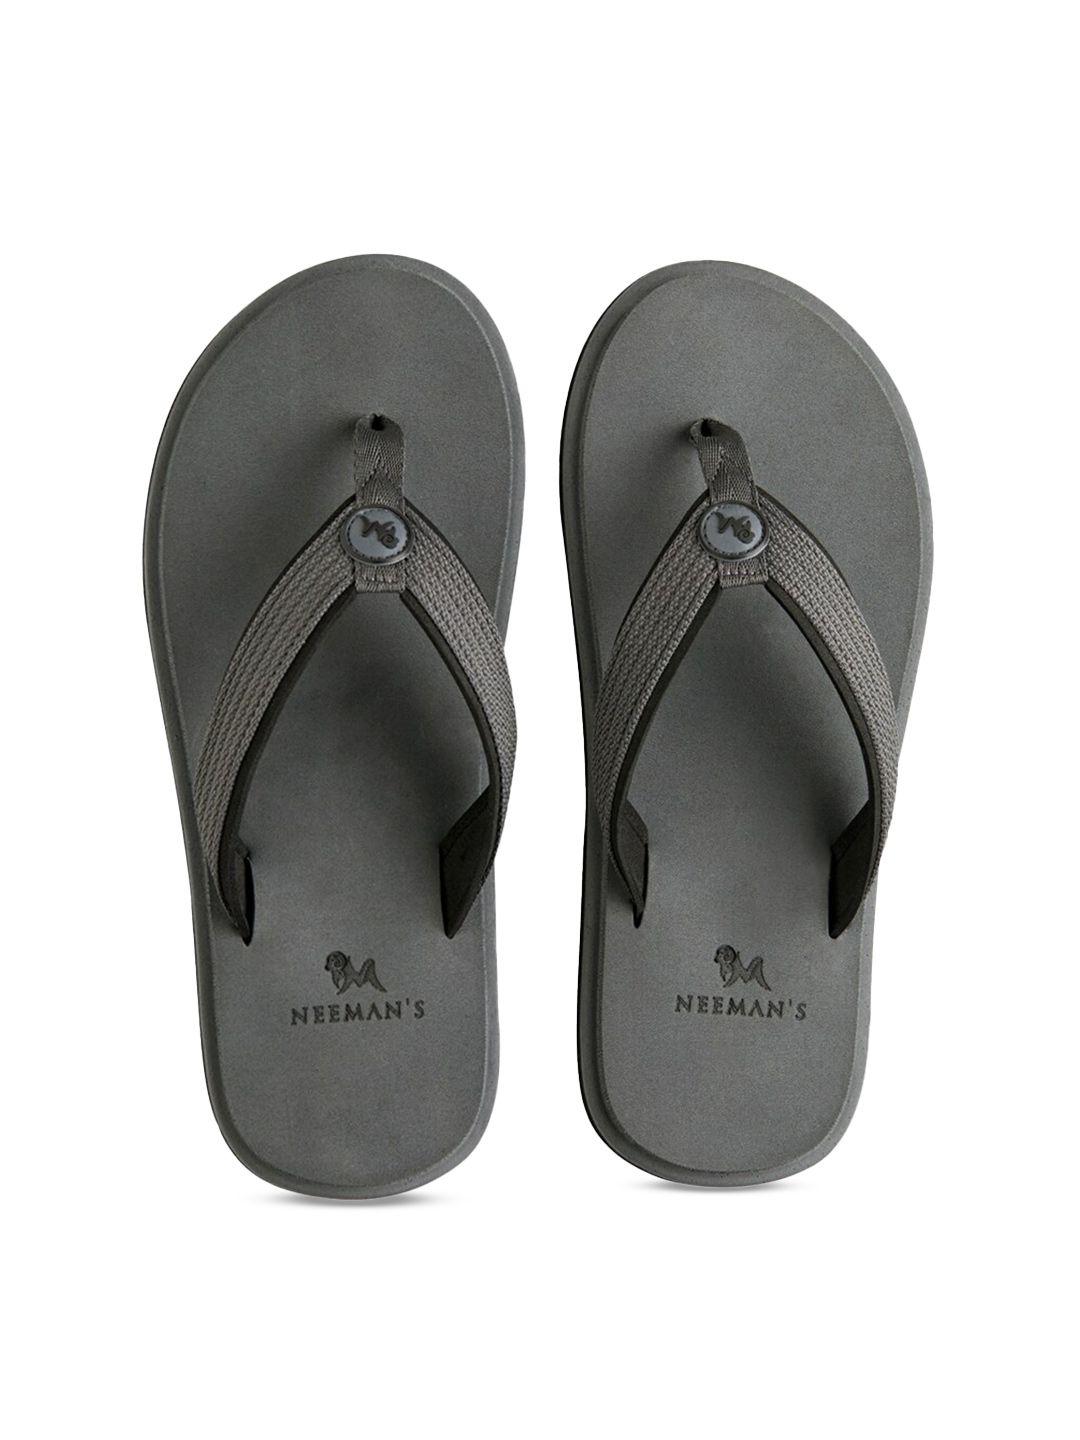 neemans unisex grey rubber thong flip-flops